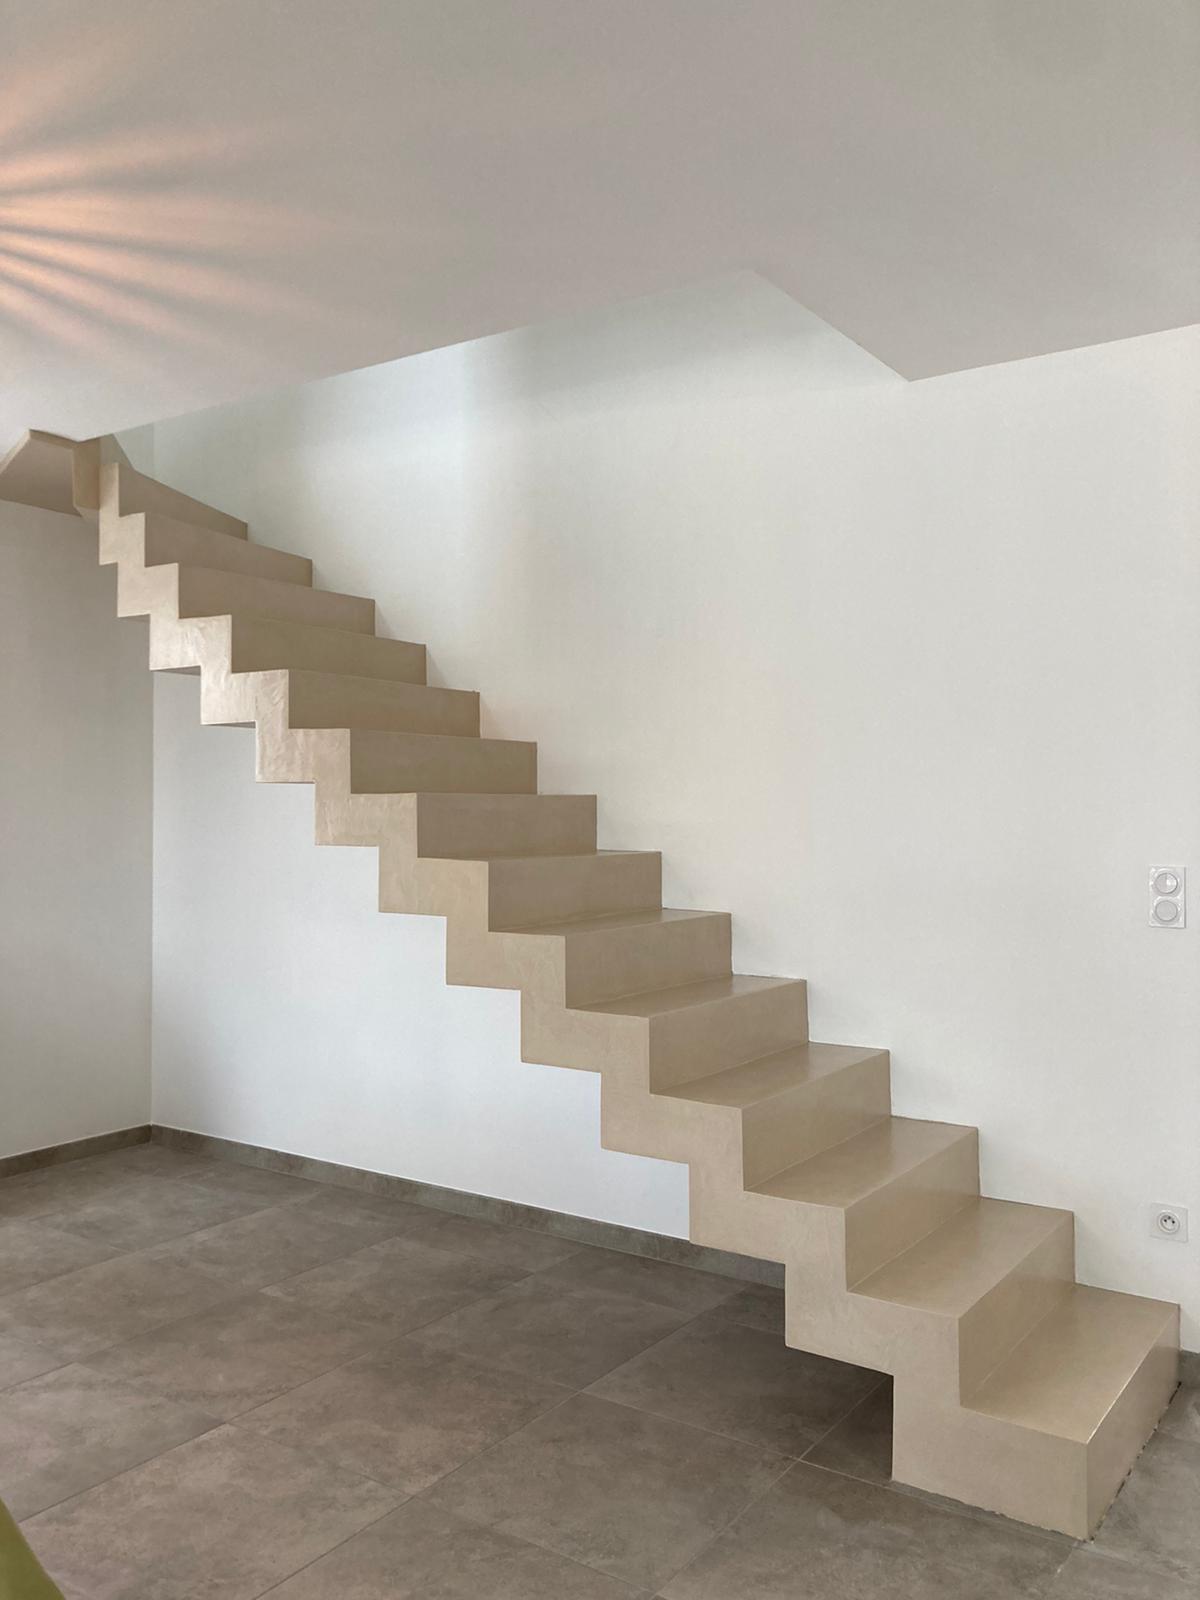 L'escalier à crémaillère droit en béton ciré peut être personnalisé en choisissant la couleur et la texture du béton ciré, ce qui permet de l'adapter à différents styles d'intérieur.